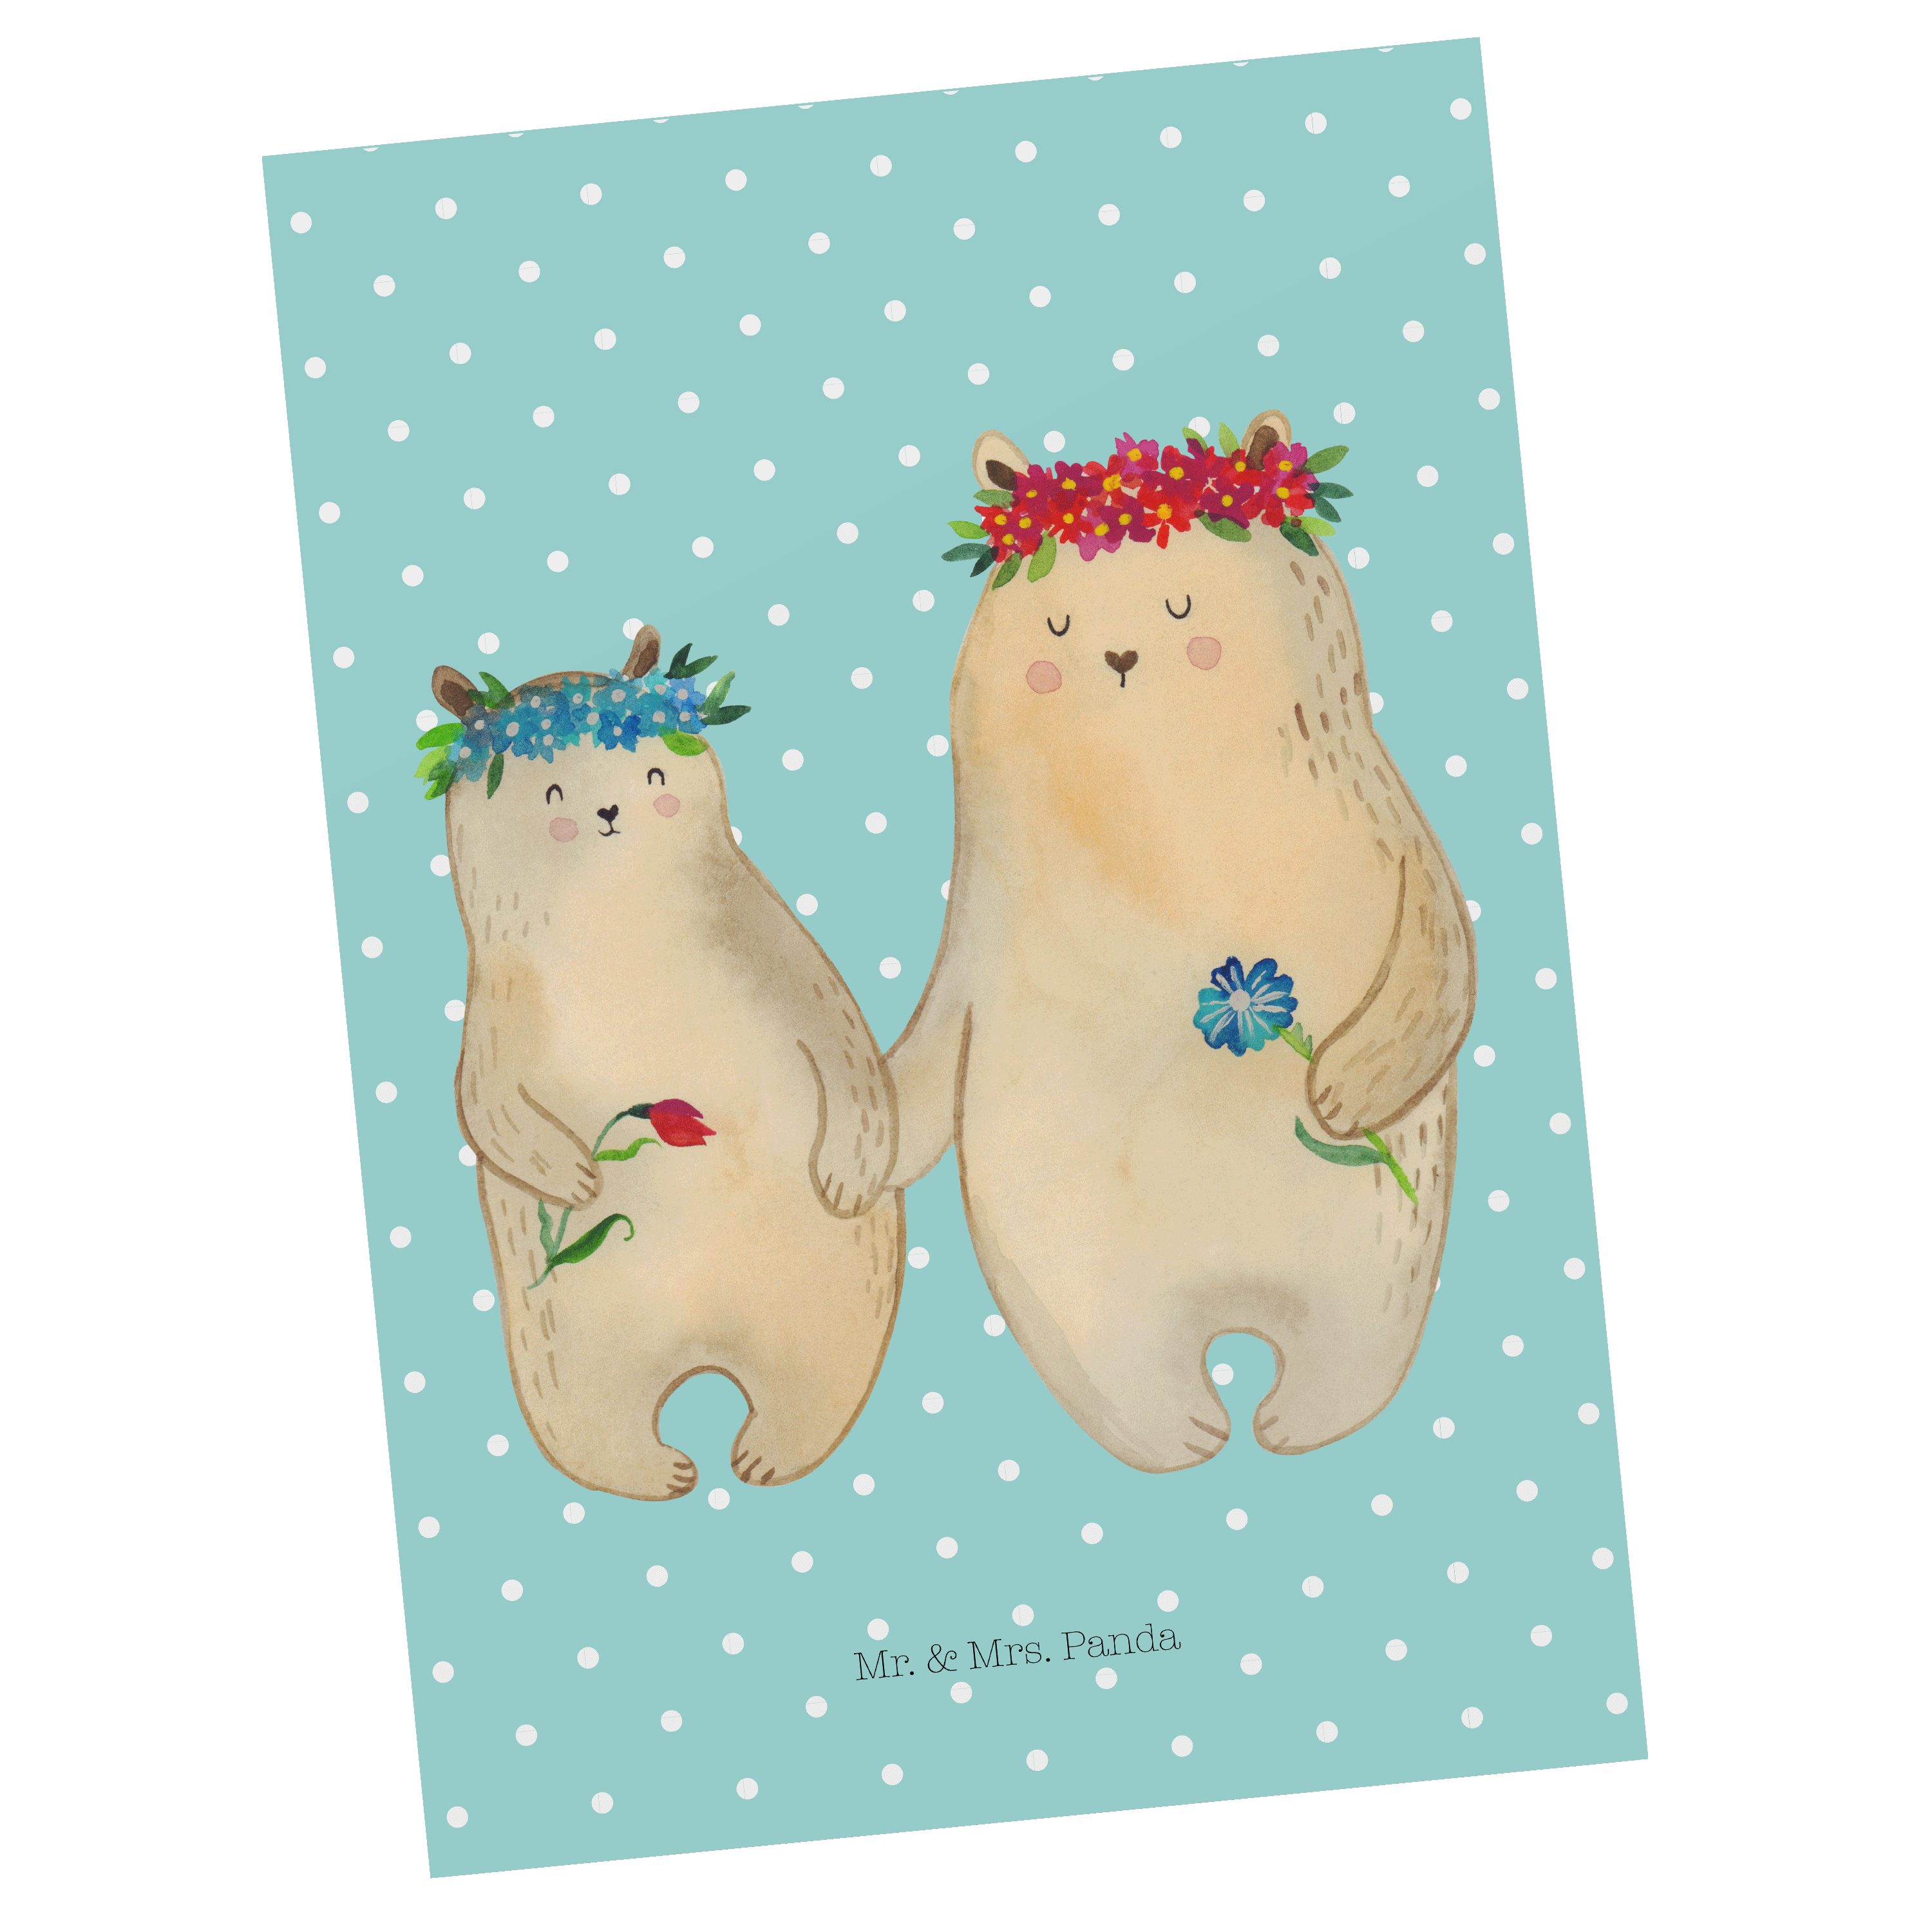 Mr. & Mrs. Panda Postkarte Bären mit Blumenkranz - Türkis Pastell - Geschenk, Karte, Schwester